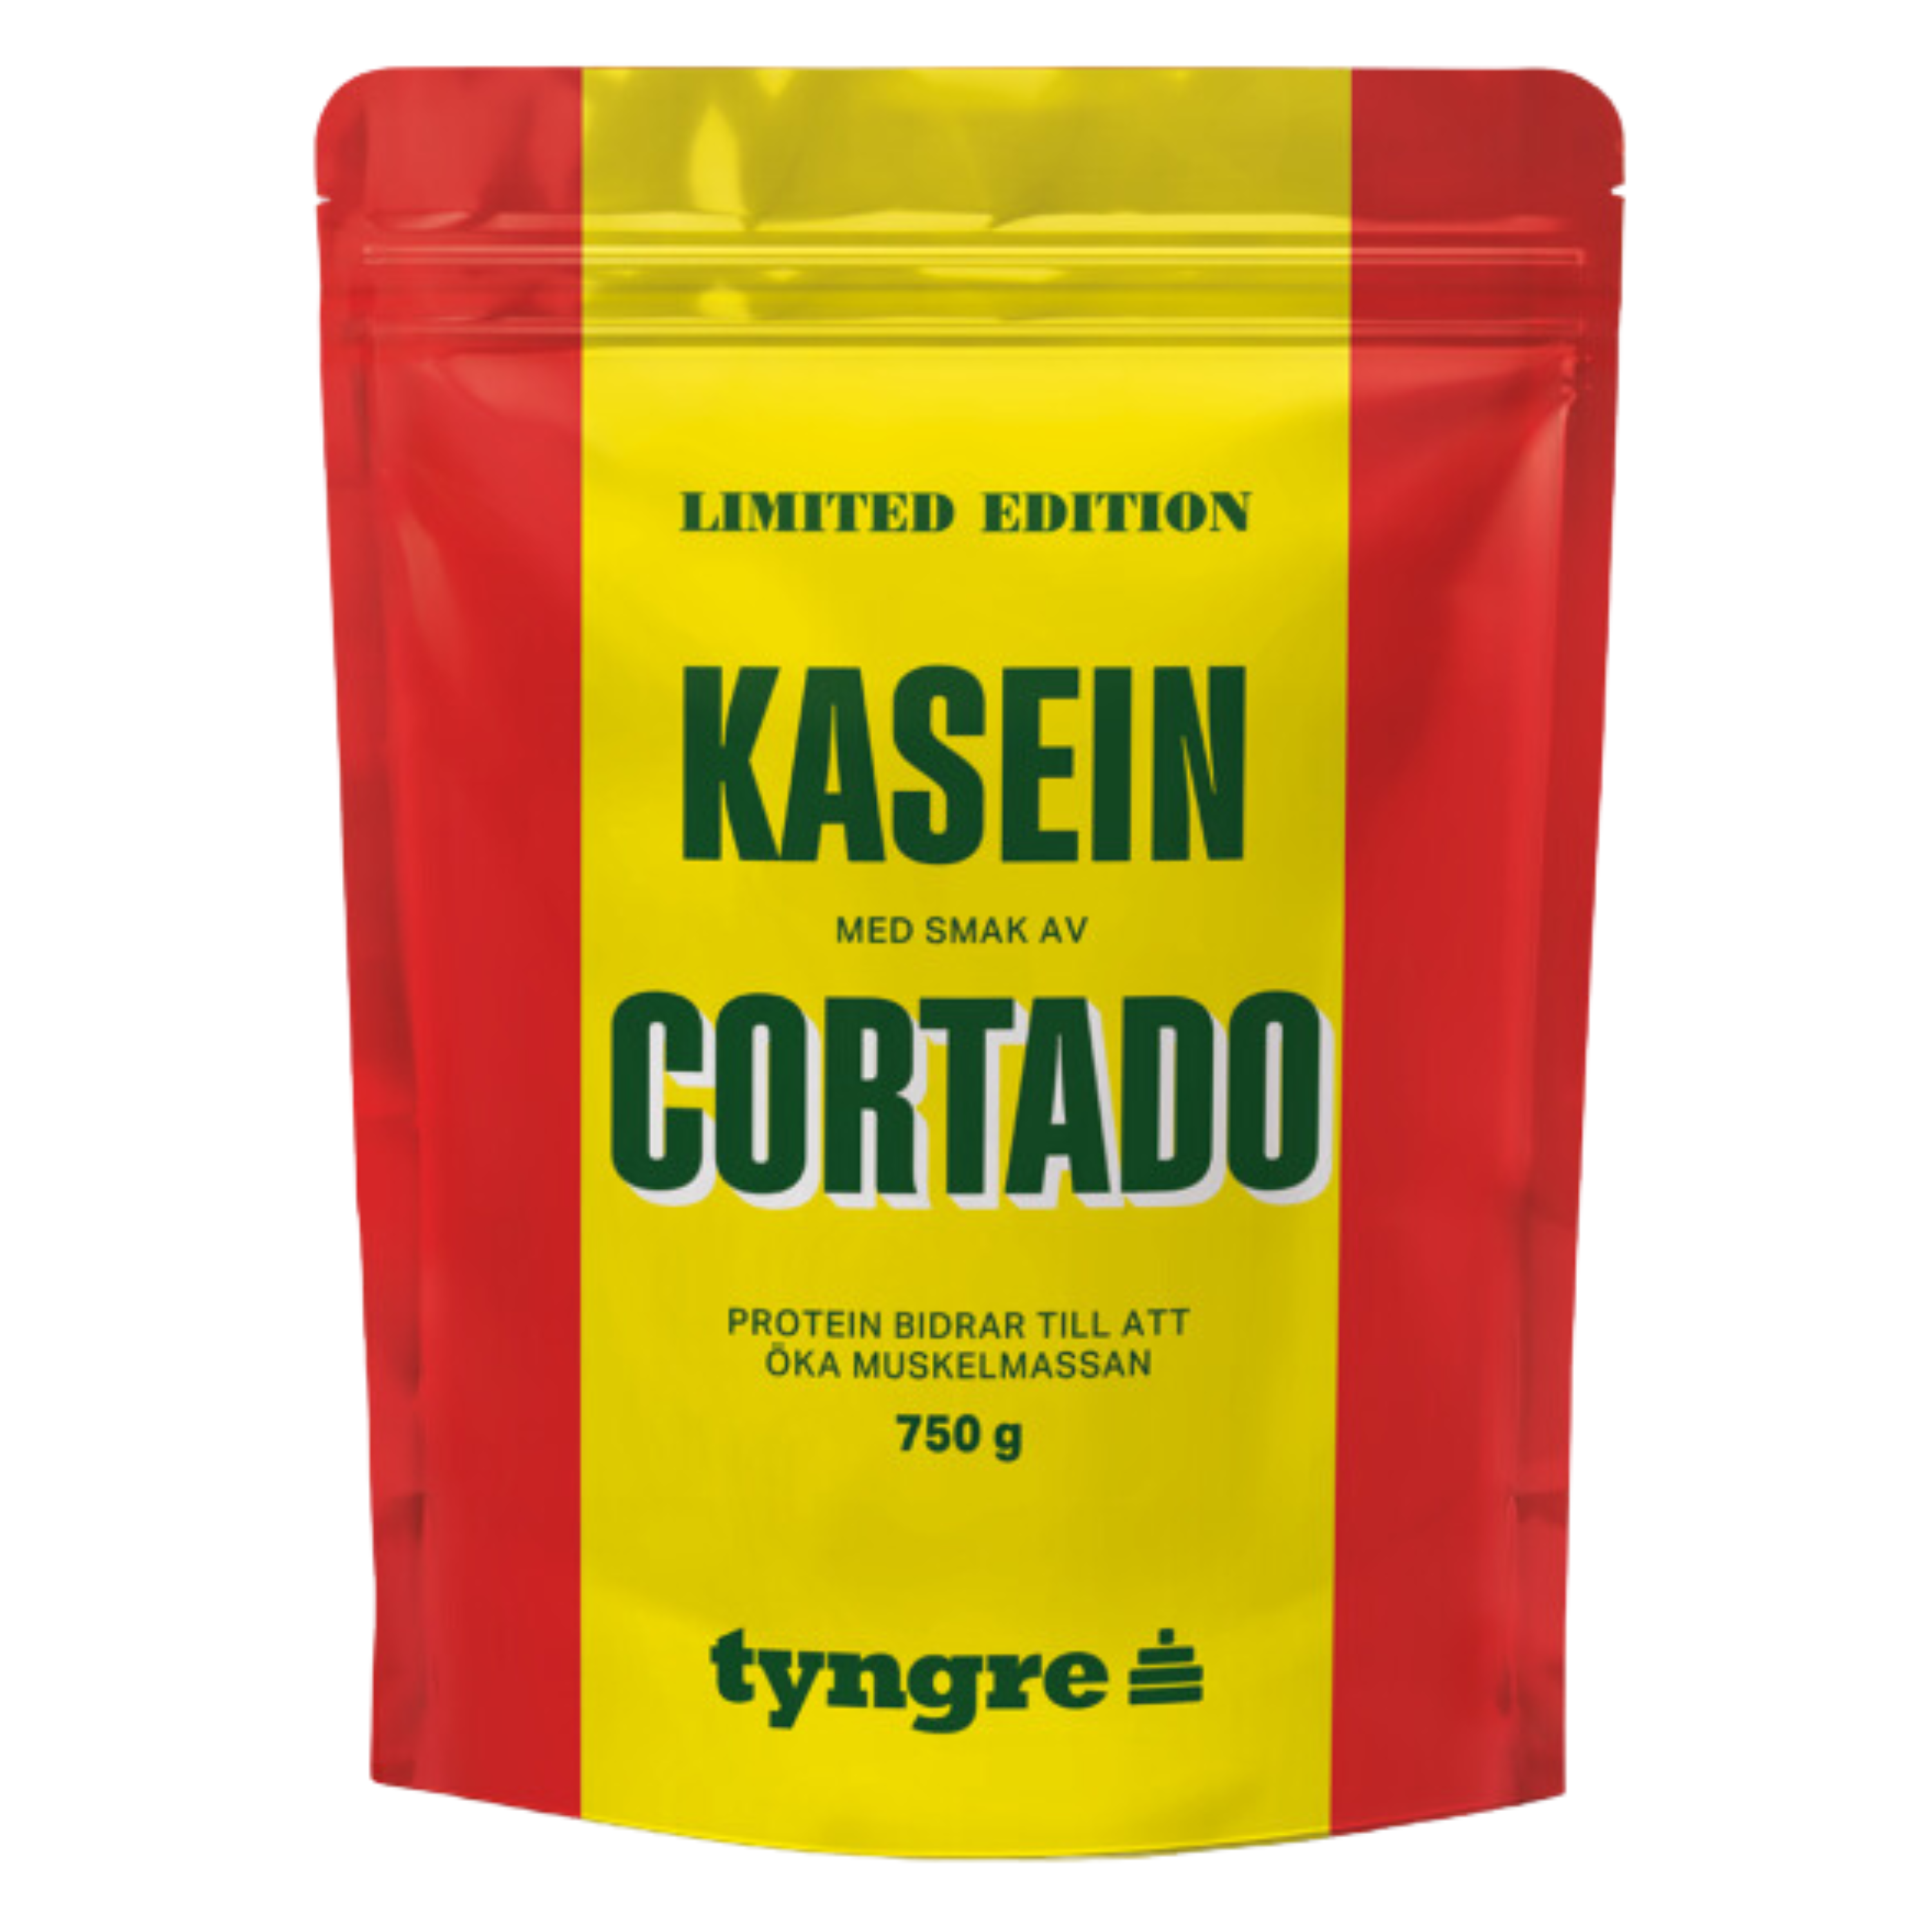 Kaseinprotein Cortado 750g